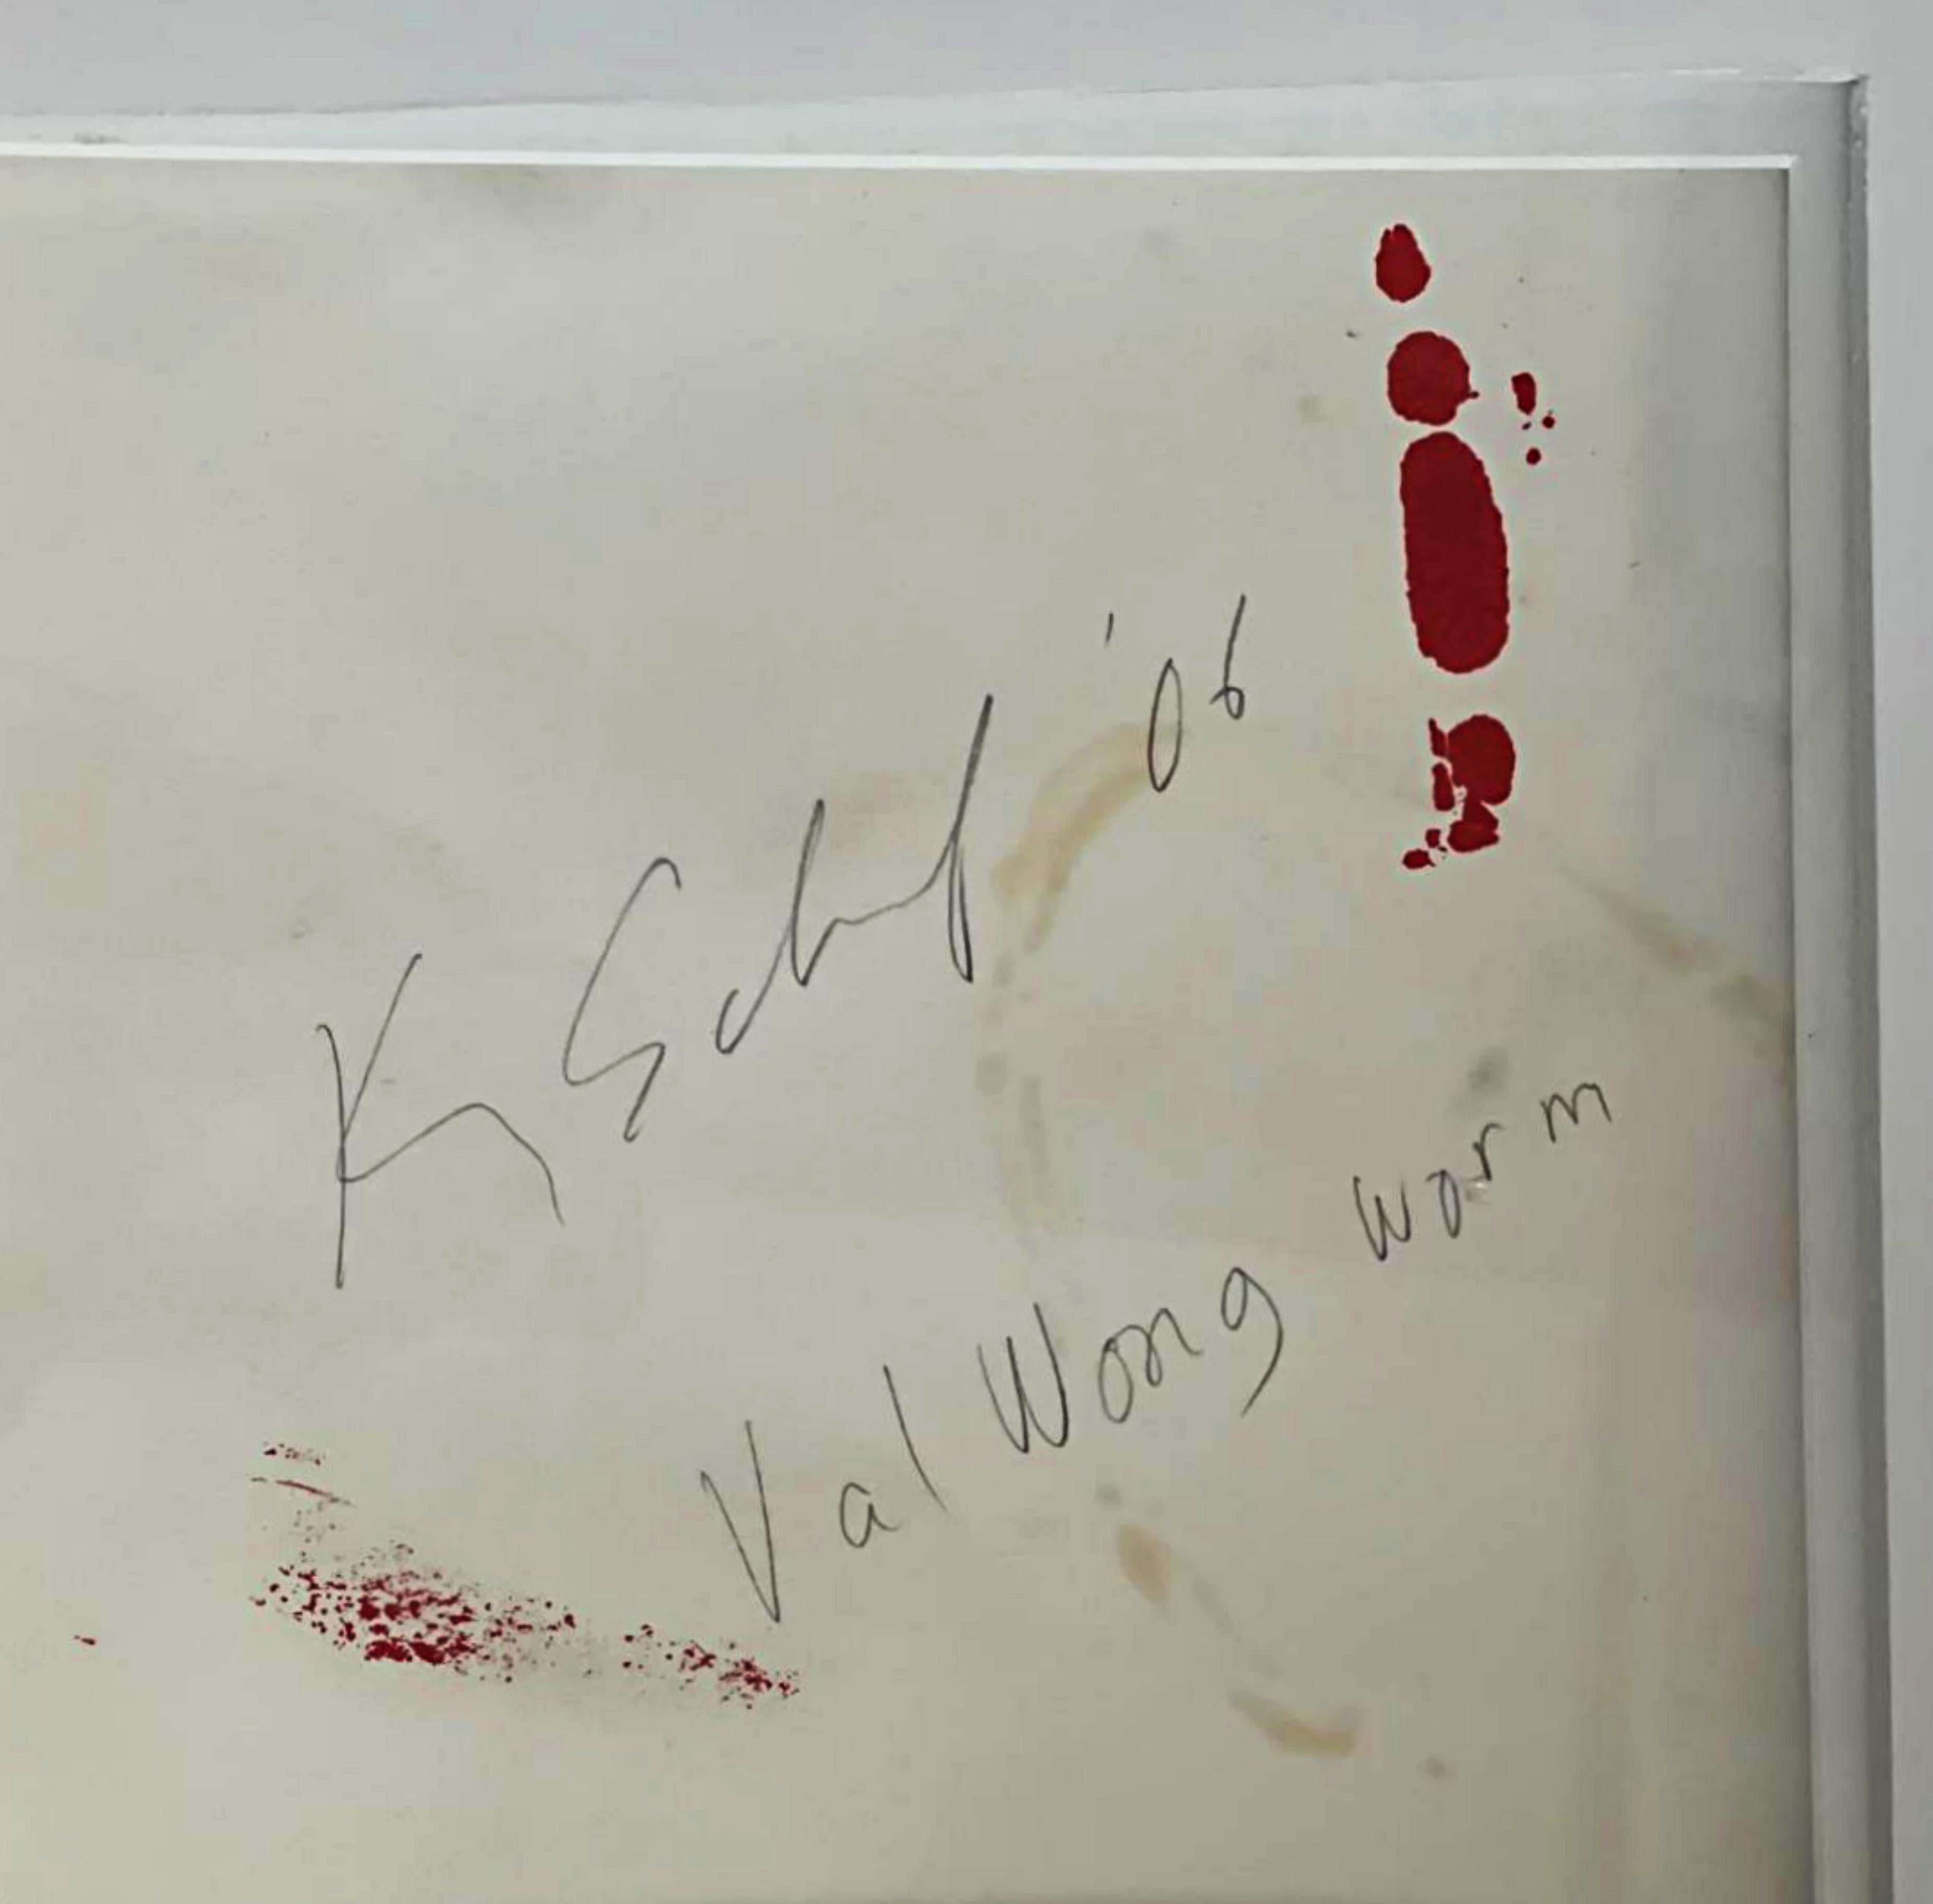 Kenny Scharf
Val Wong Worm, 2006
Öl, Acryl, Siebdruck und Strasssteine auf Papier
Signiert, datiert und betitelt durch den Künstler auf dem gestanzten Fenster auf der Rückseite
Inklusive Rahmen: elegant schwebend und gerahmt in einem weißen